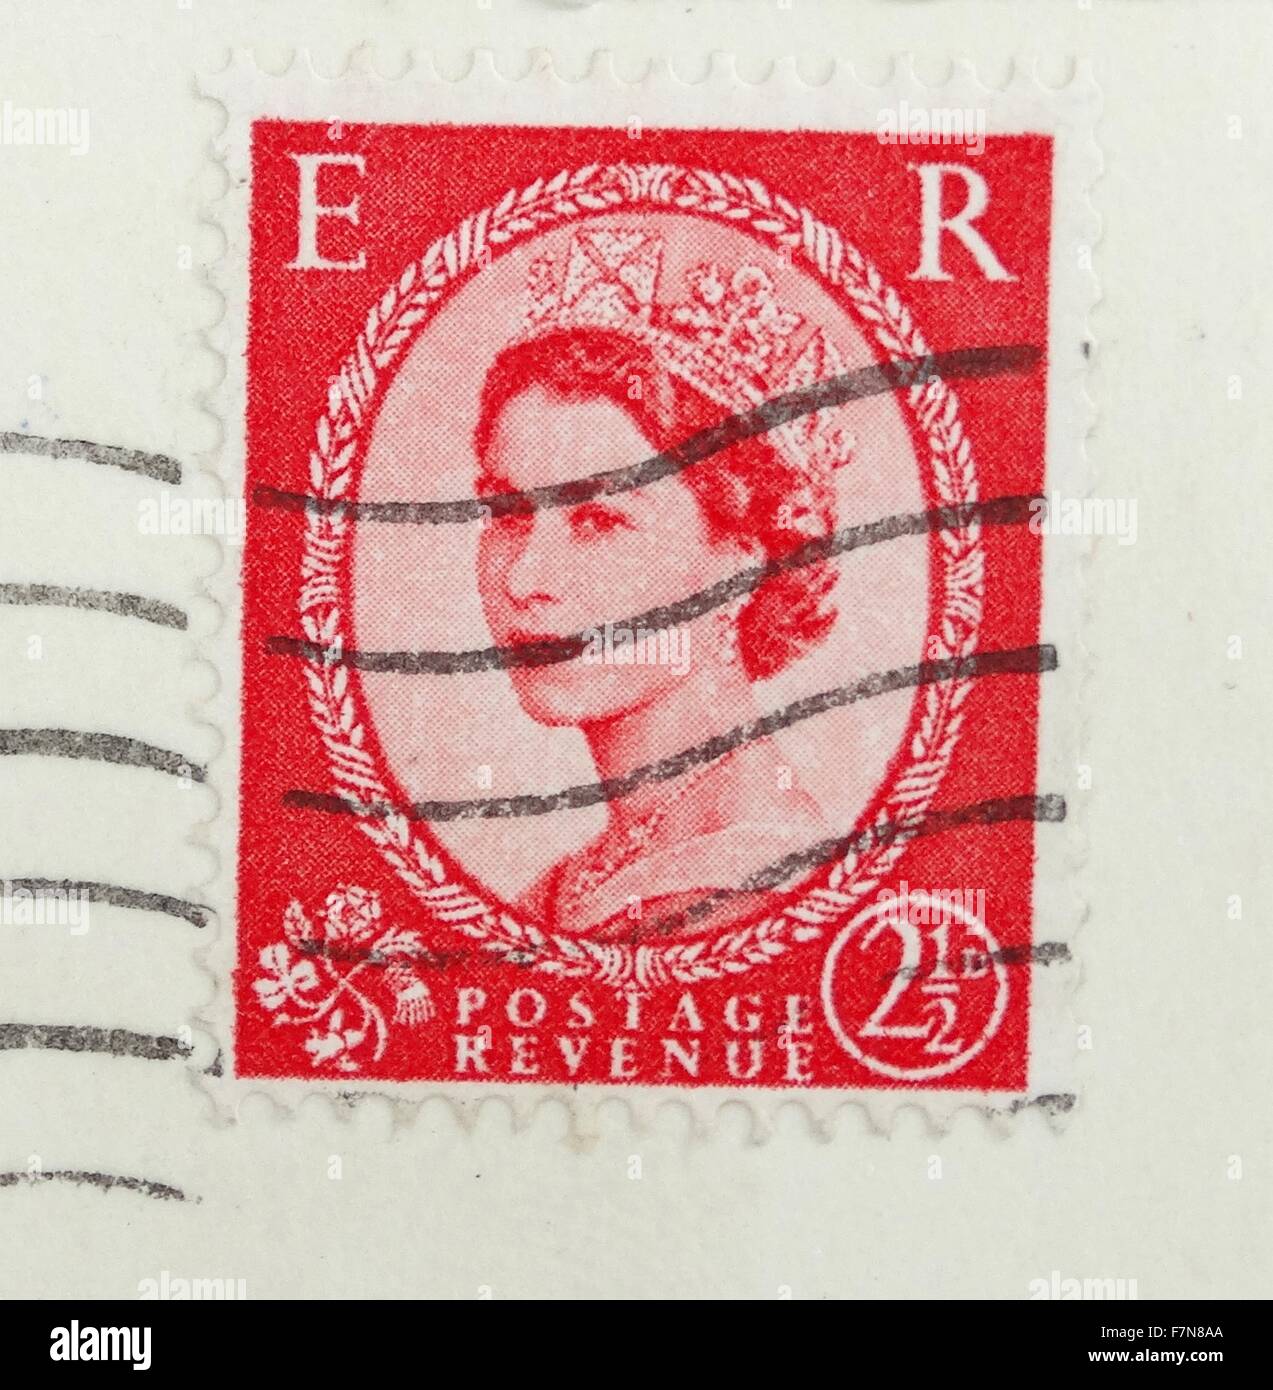 Konigin Elizabeth Ii Wie Sie Auf Eine Englische Briefmarke Ca 1958 Erschienen Stockfotografie Alamy